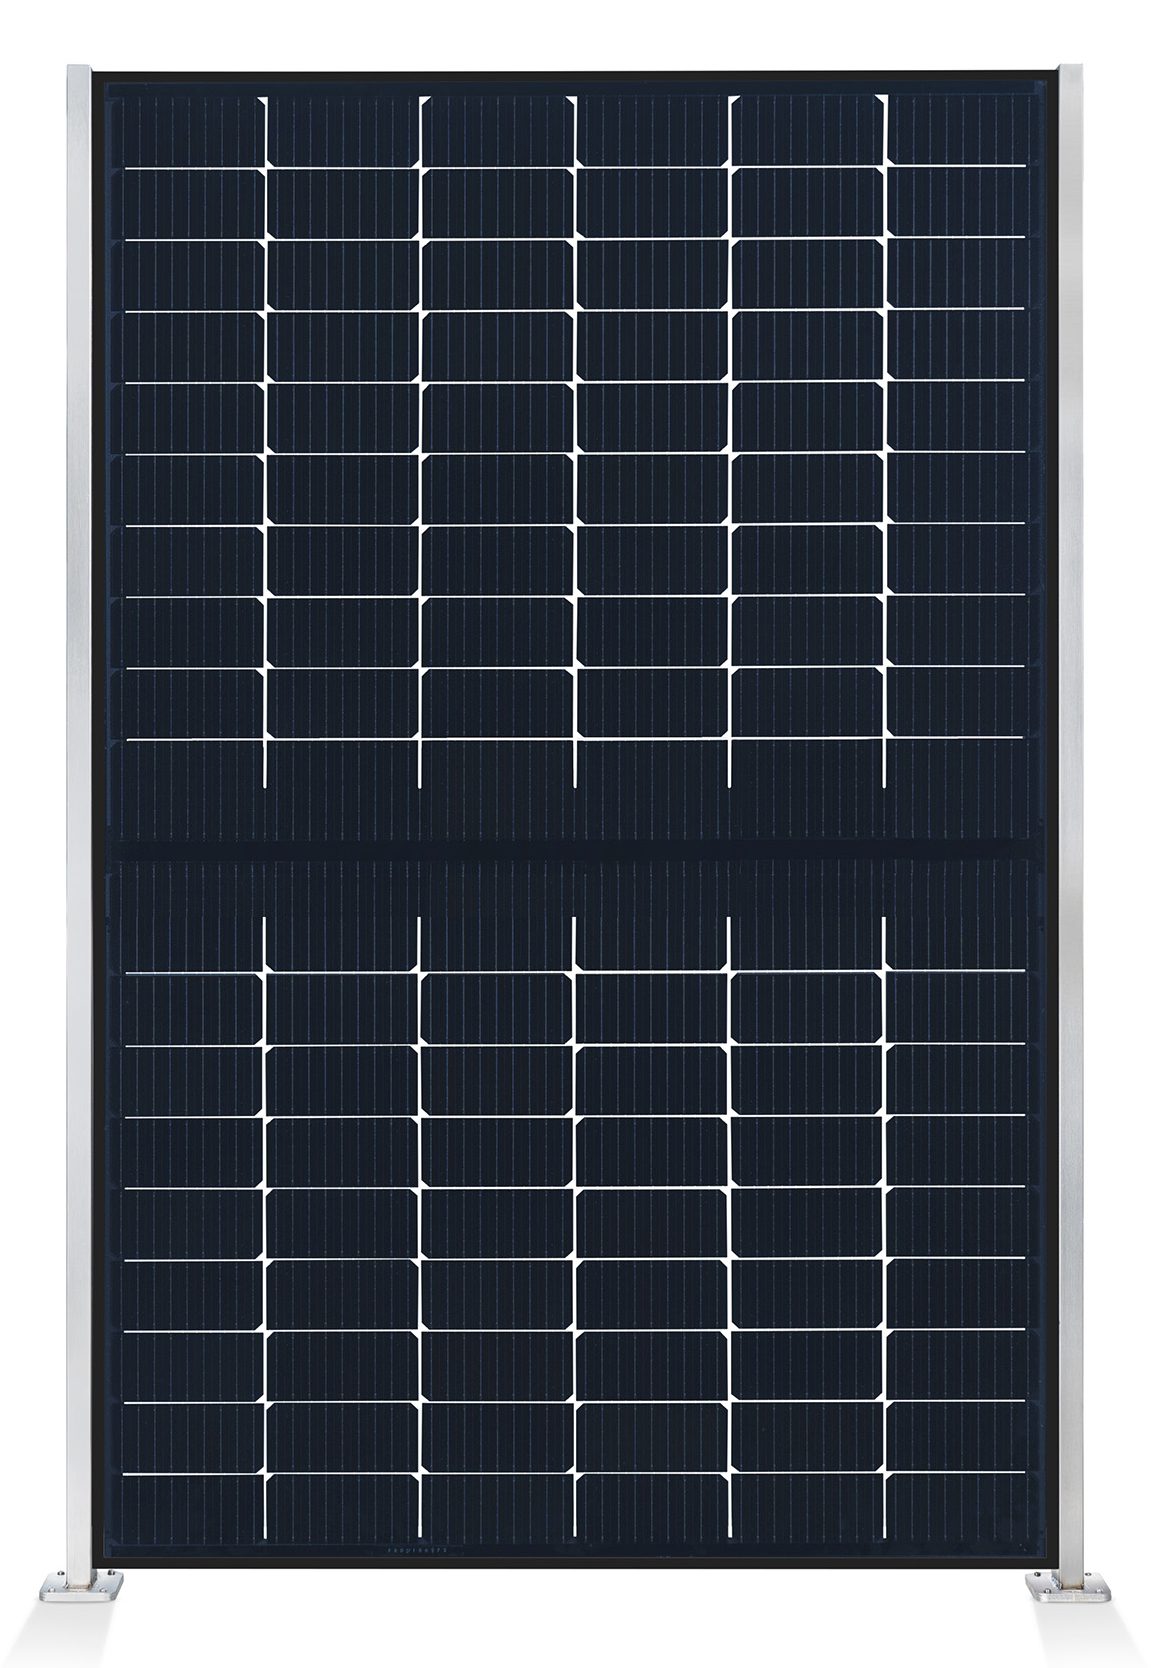 ausschnitt_0001_element-solar-sichtschutz-pv-photovoltaik-zaun-collection-hutter-panel-transparent-pfosten-edelstahl-fro.jpg